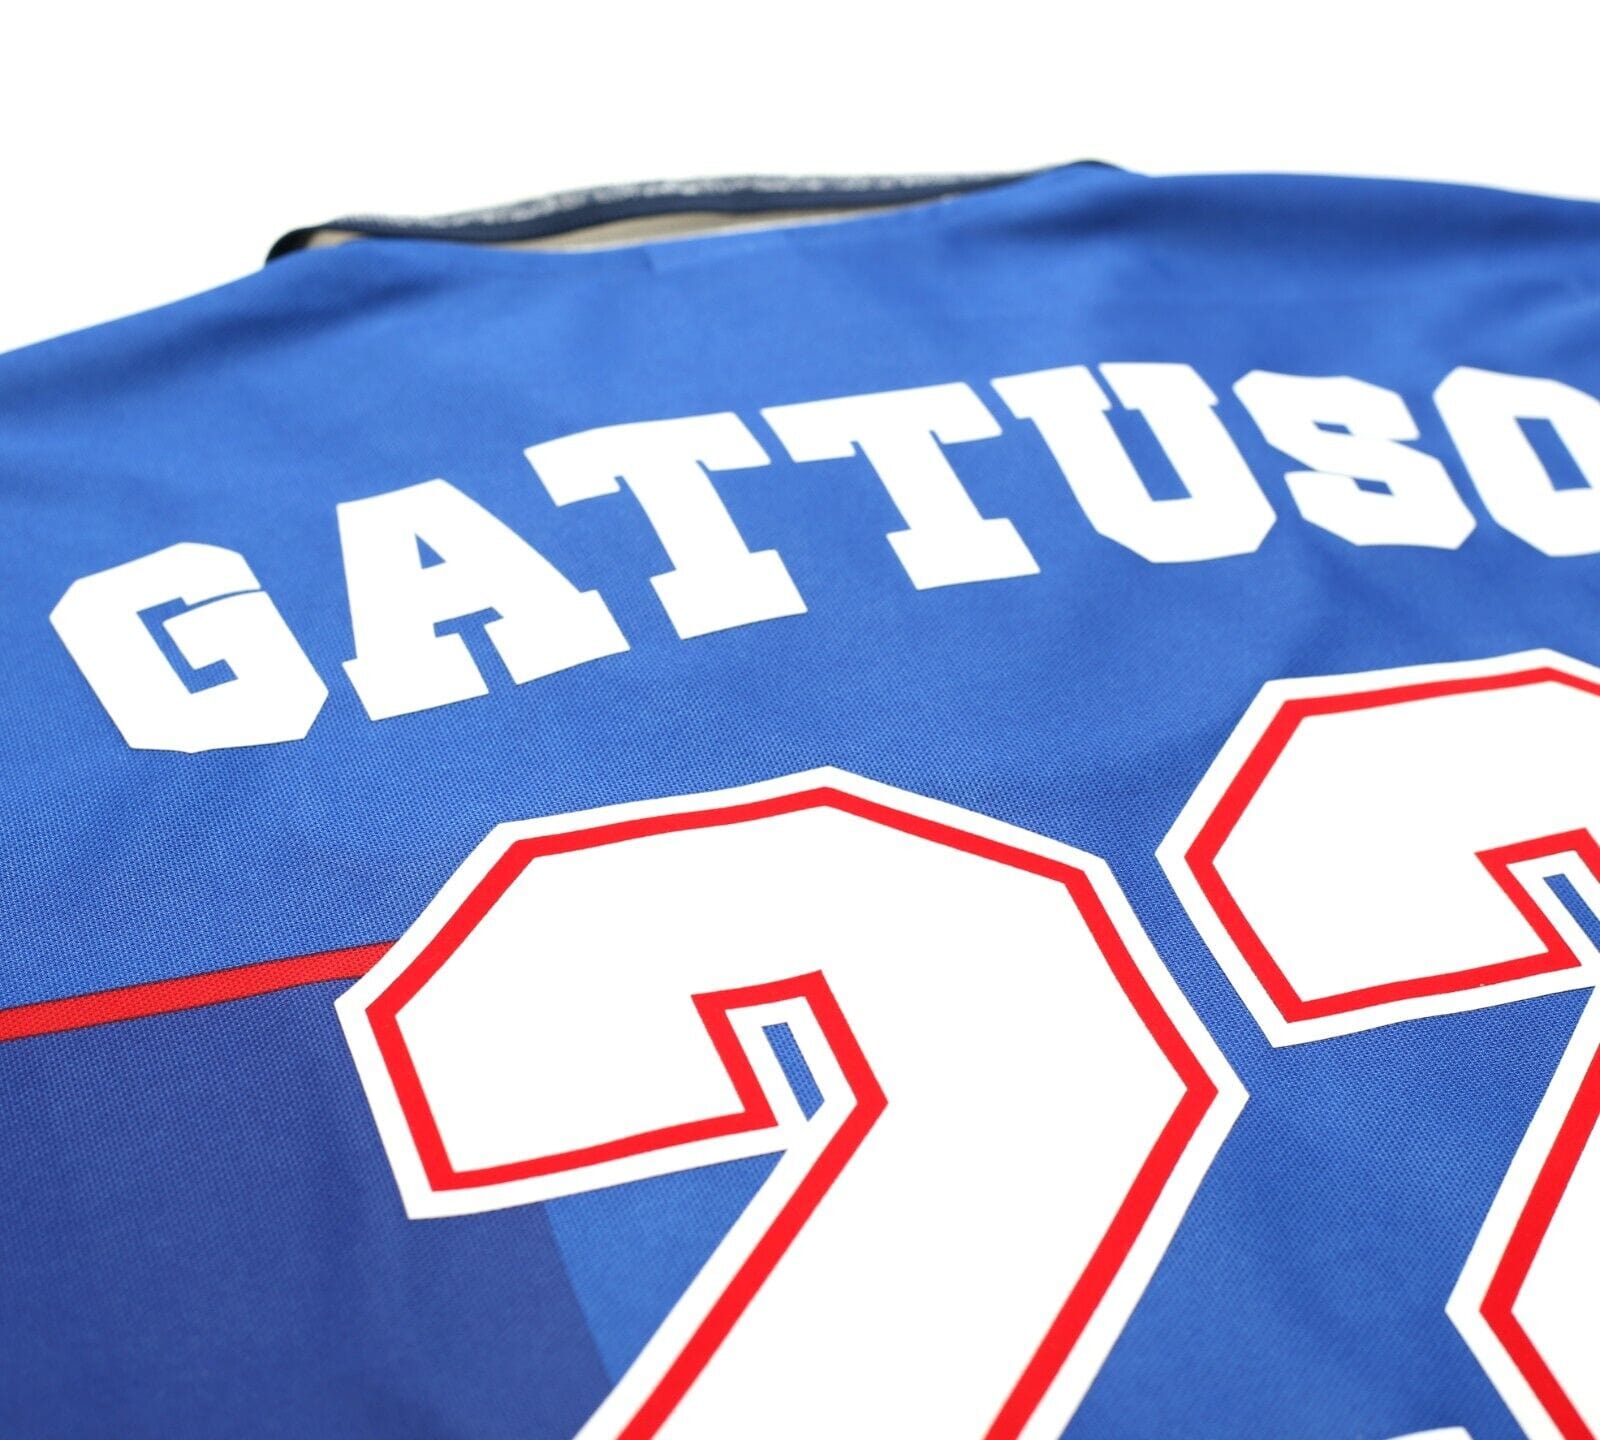 1997/99 GATTUSO #22 Rangers Vintage Nike European Home Football Shirt (XL)